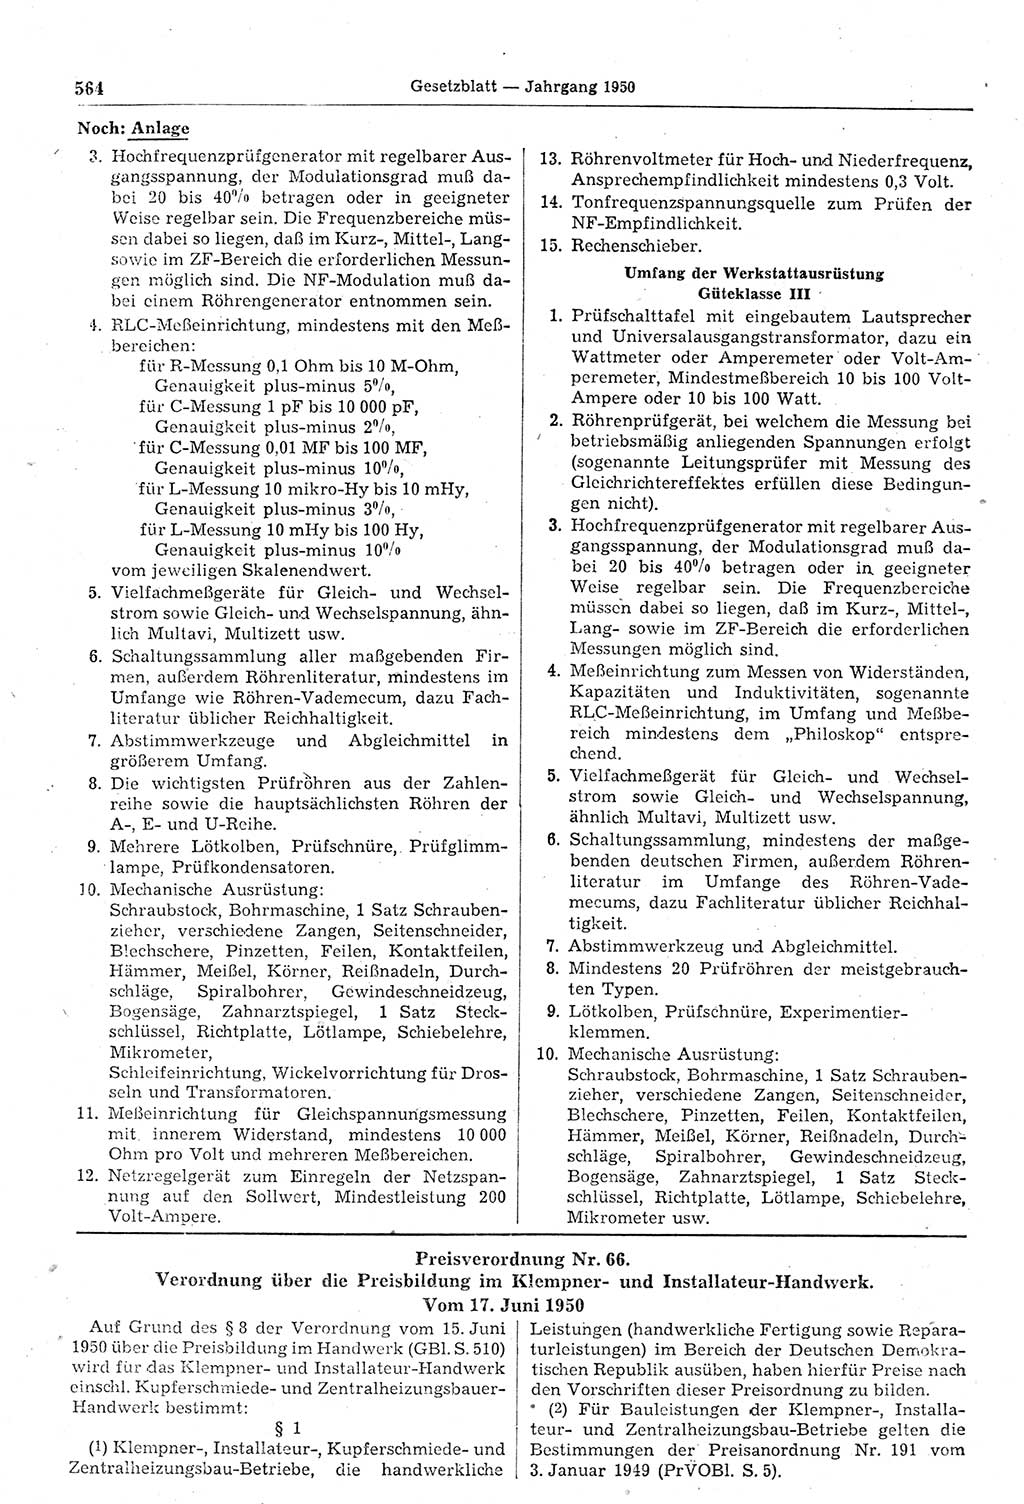 Gesetzblatt (GBl.) der Deutschen Demokratischen Republik (DDR) 1950, Seite 564 (GBl. DDR 1950, S. 564)